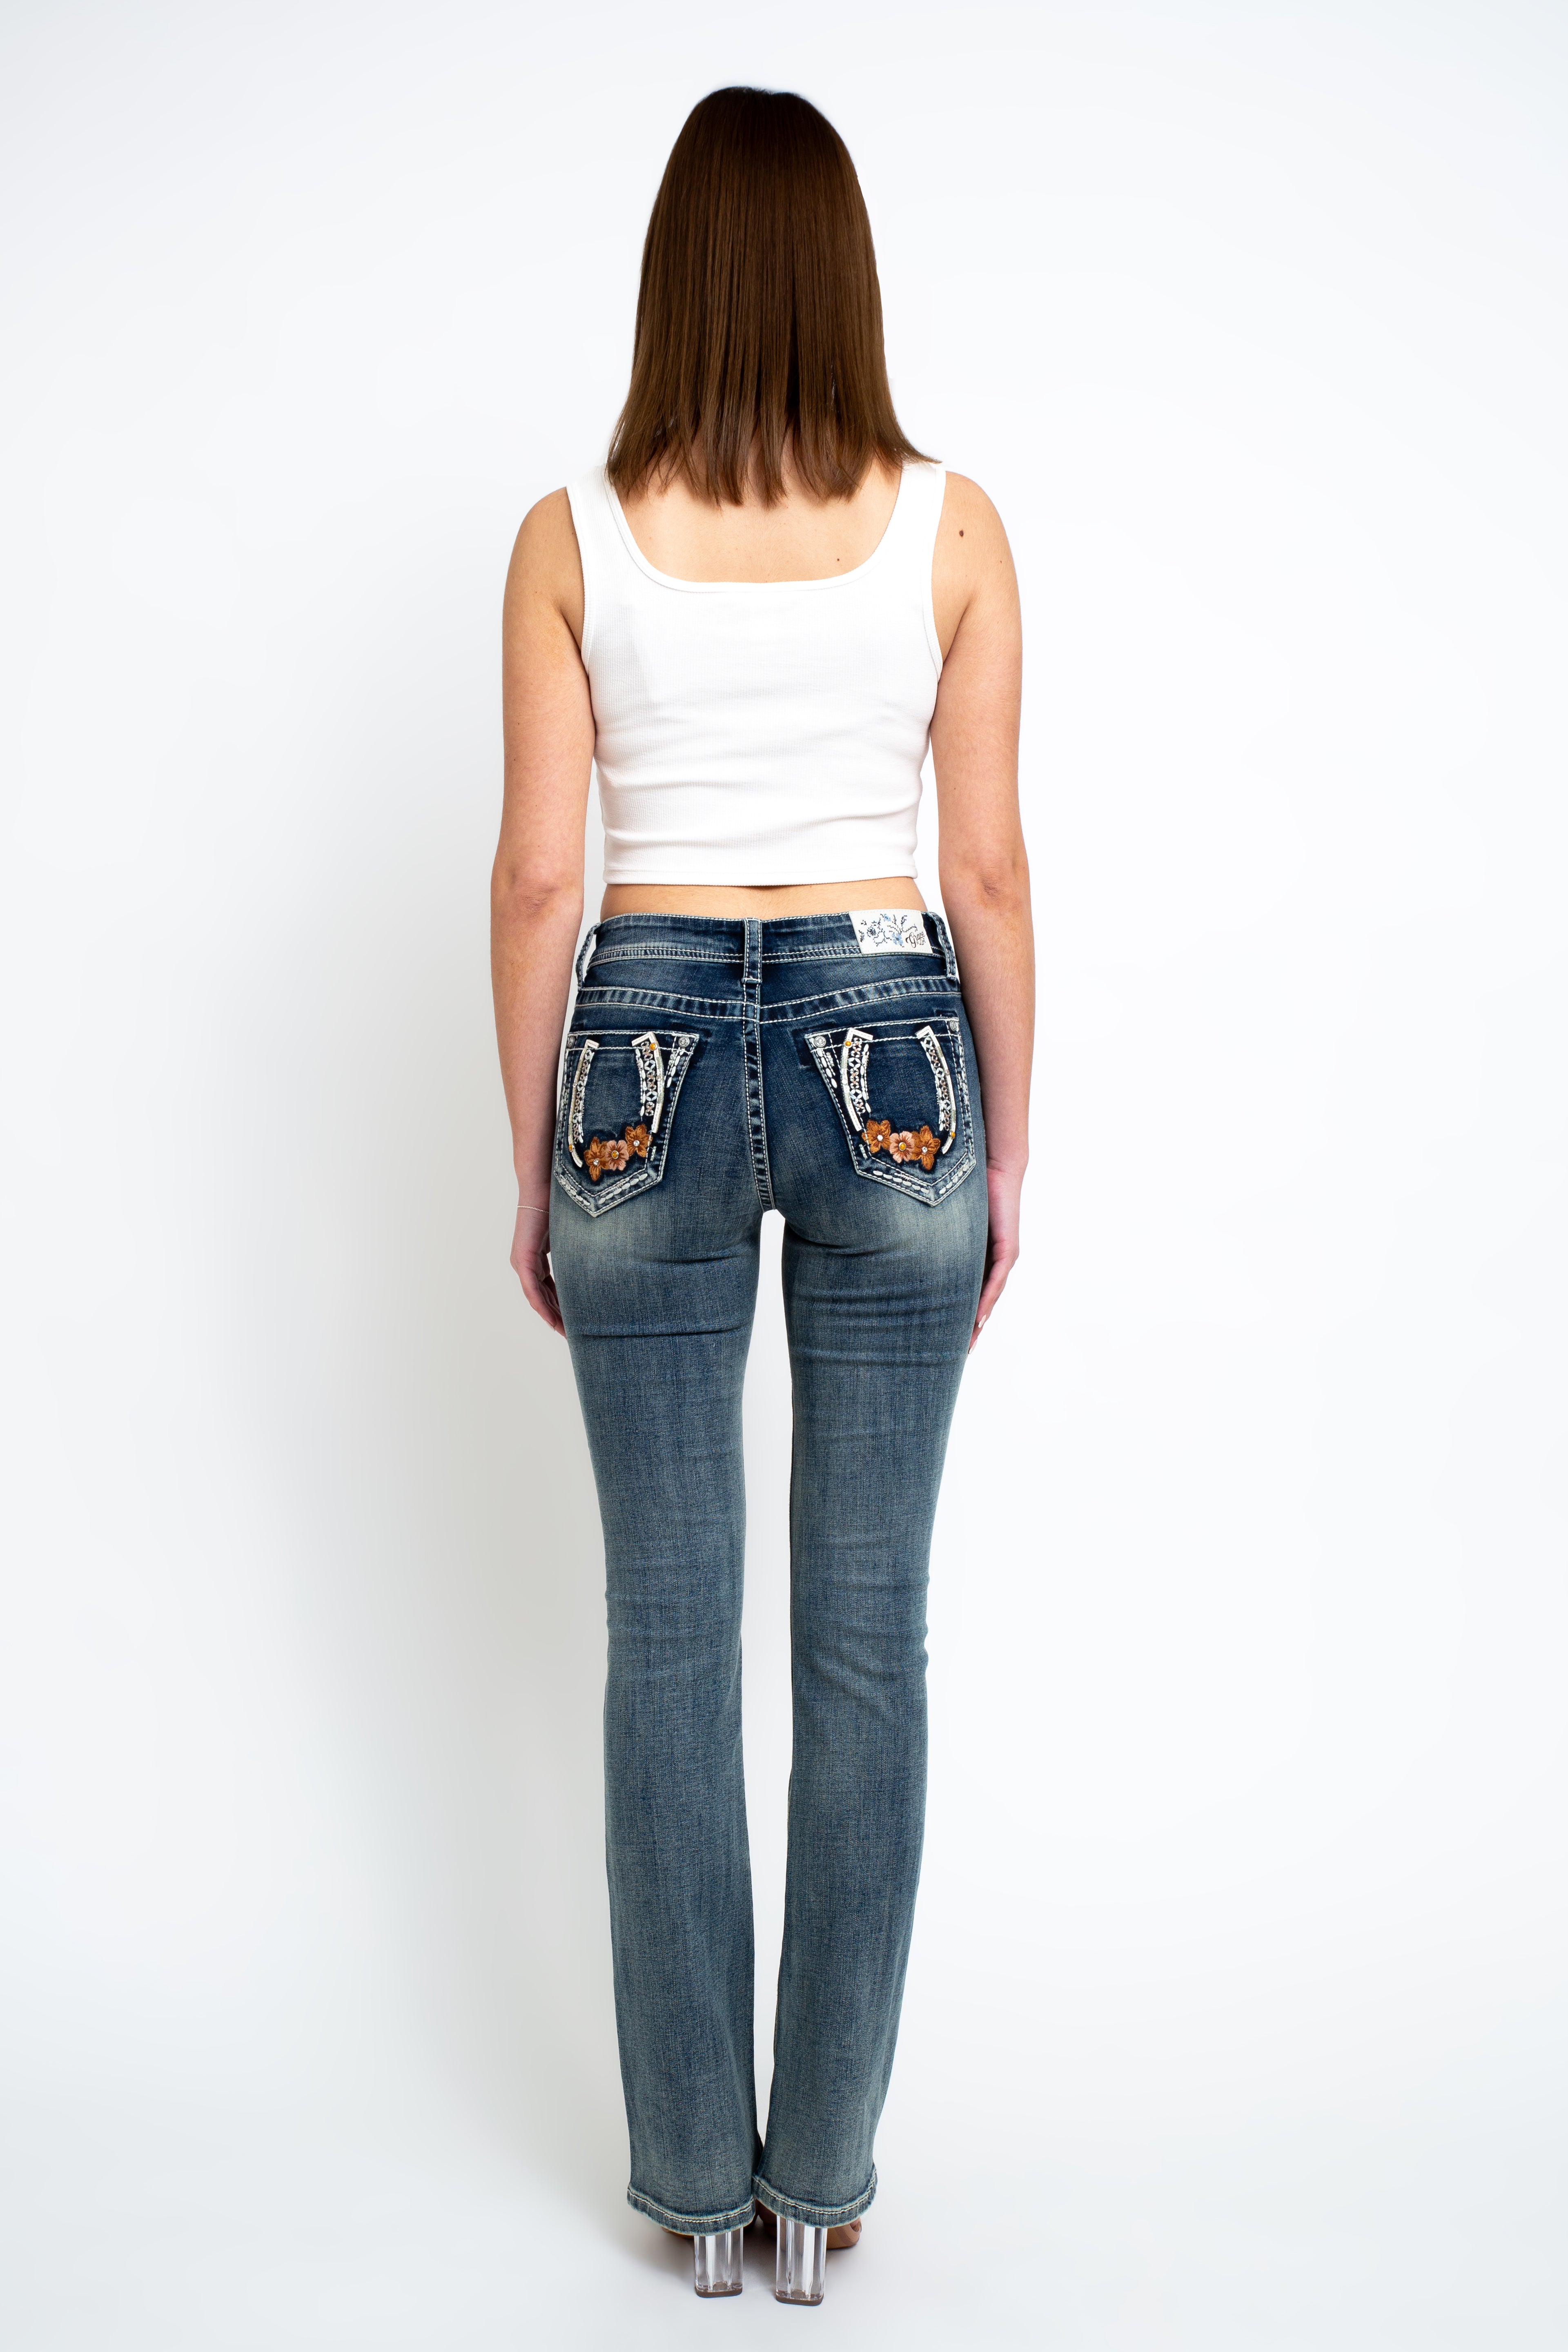 embellished-jeans-embellish-jeans-womens-embellished-jeans-grace-in-la-denimembellished jeans 